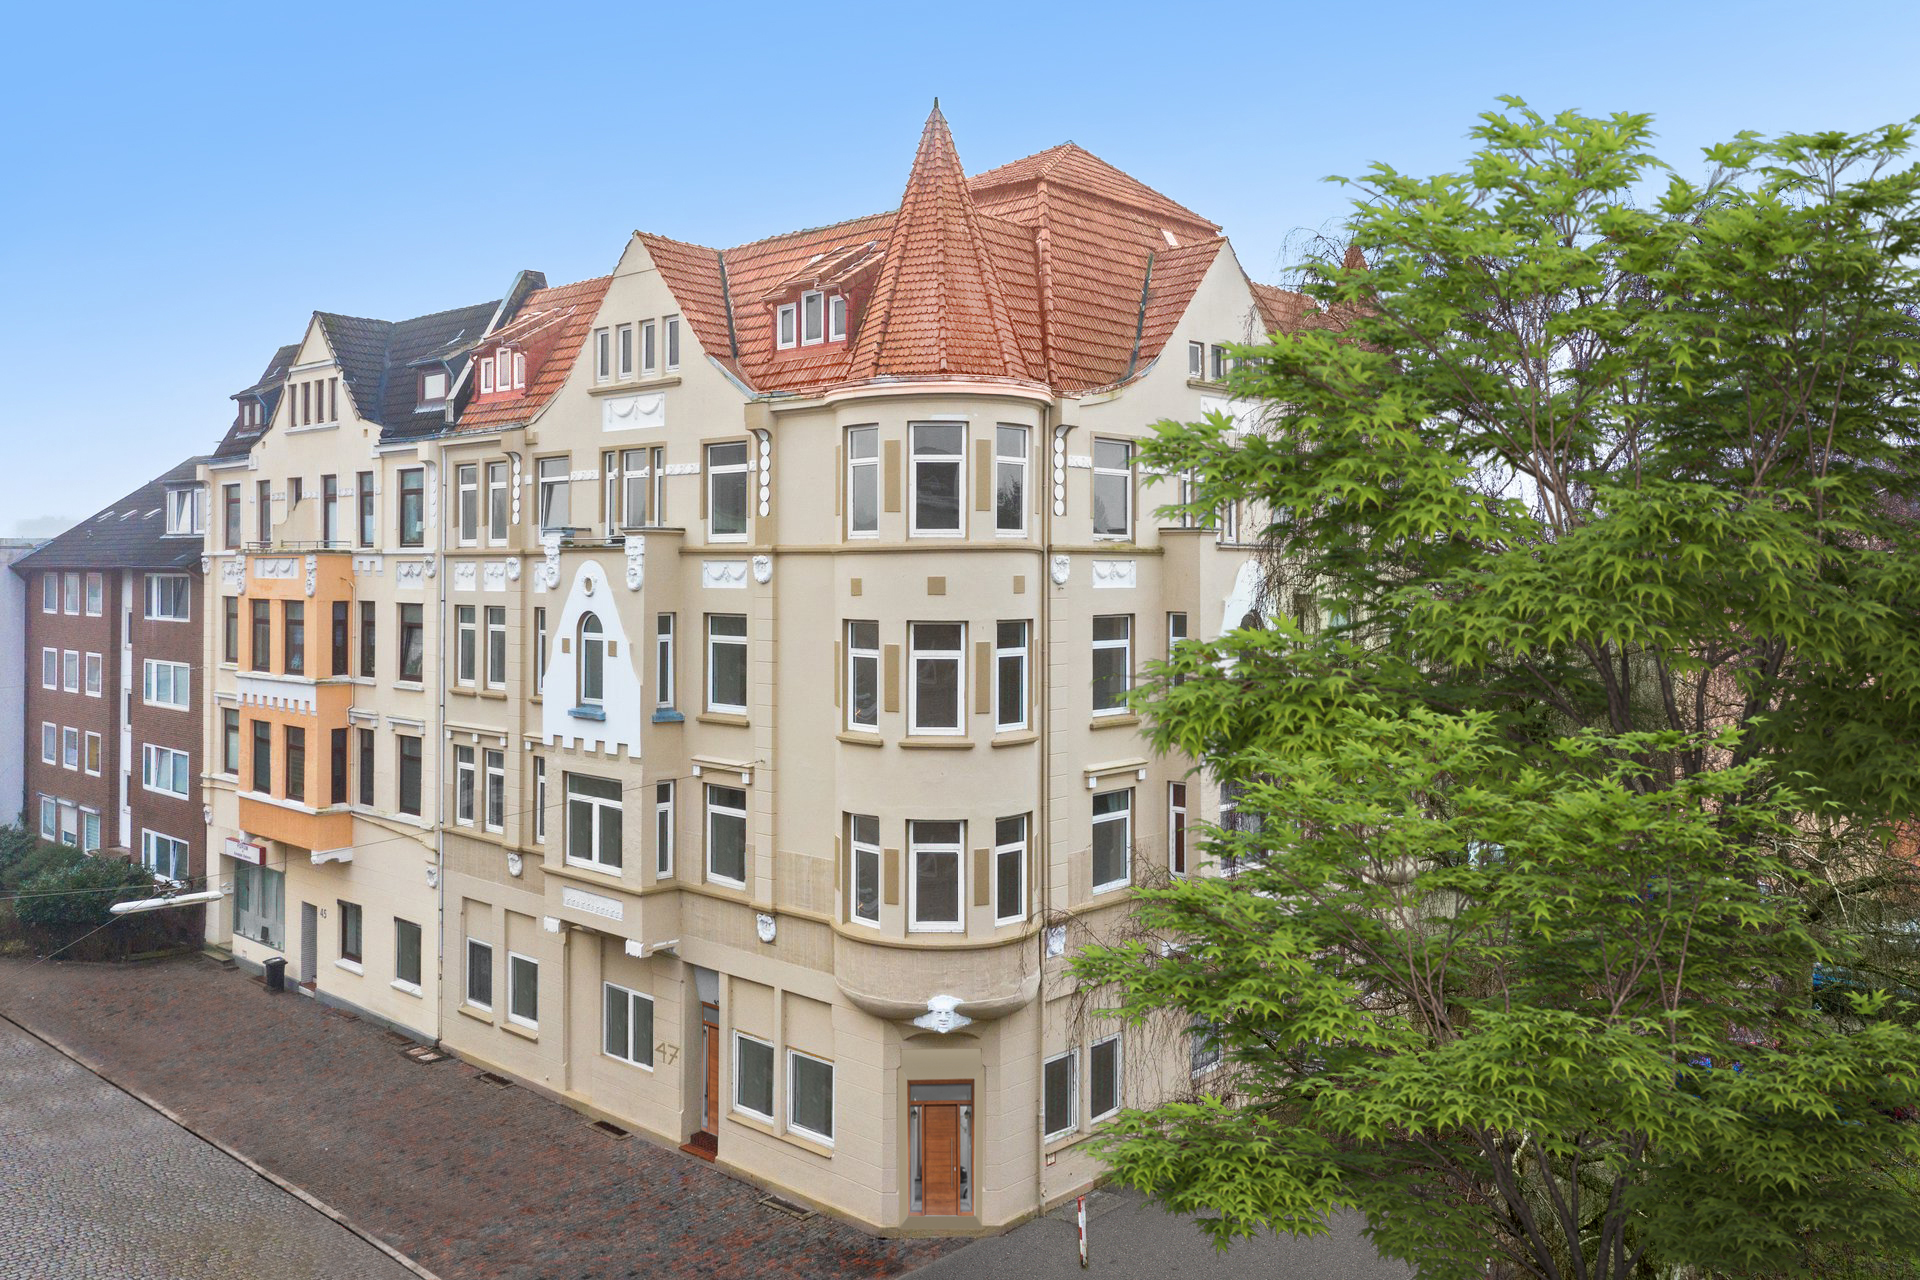 Neues Vertriebsobjekt mit 13 Wohnungen, 4% Rendite und spektakulärer Fassade in Bremerhaven!